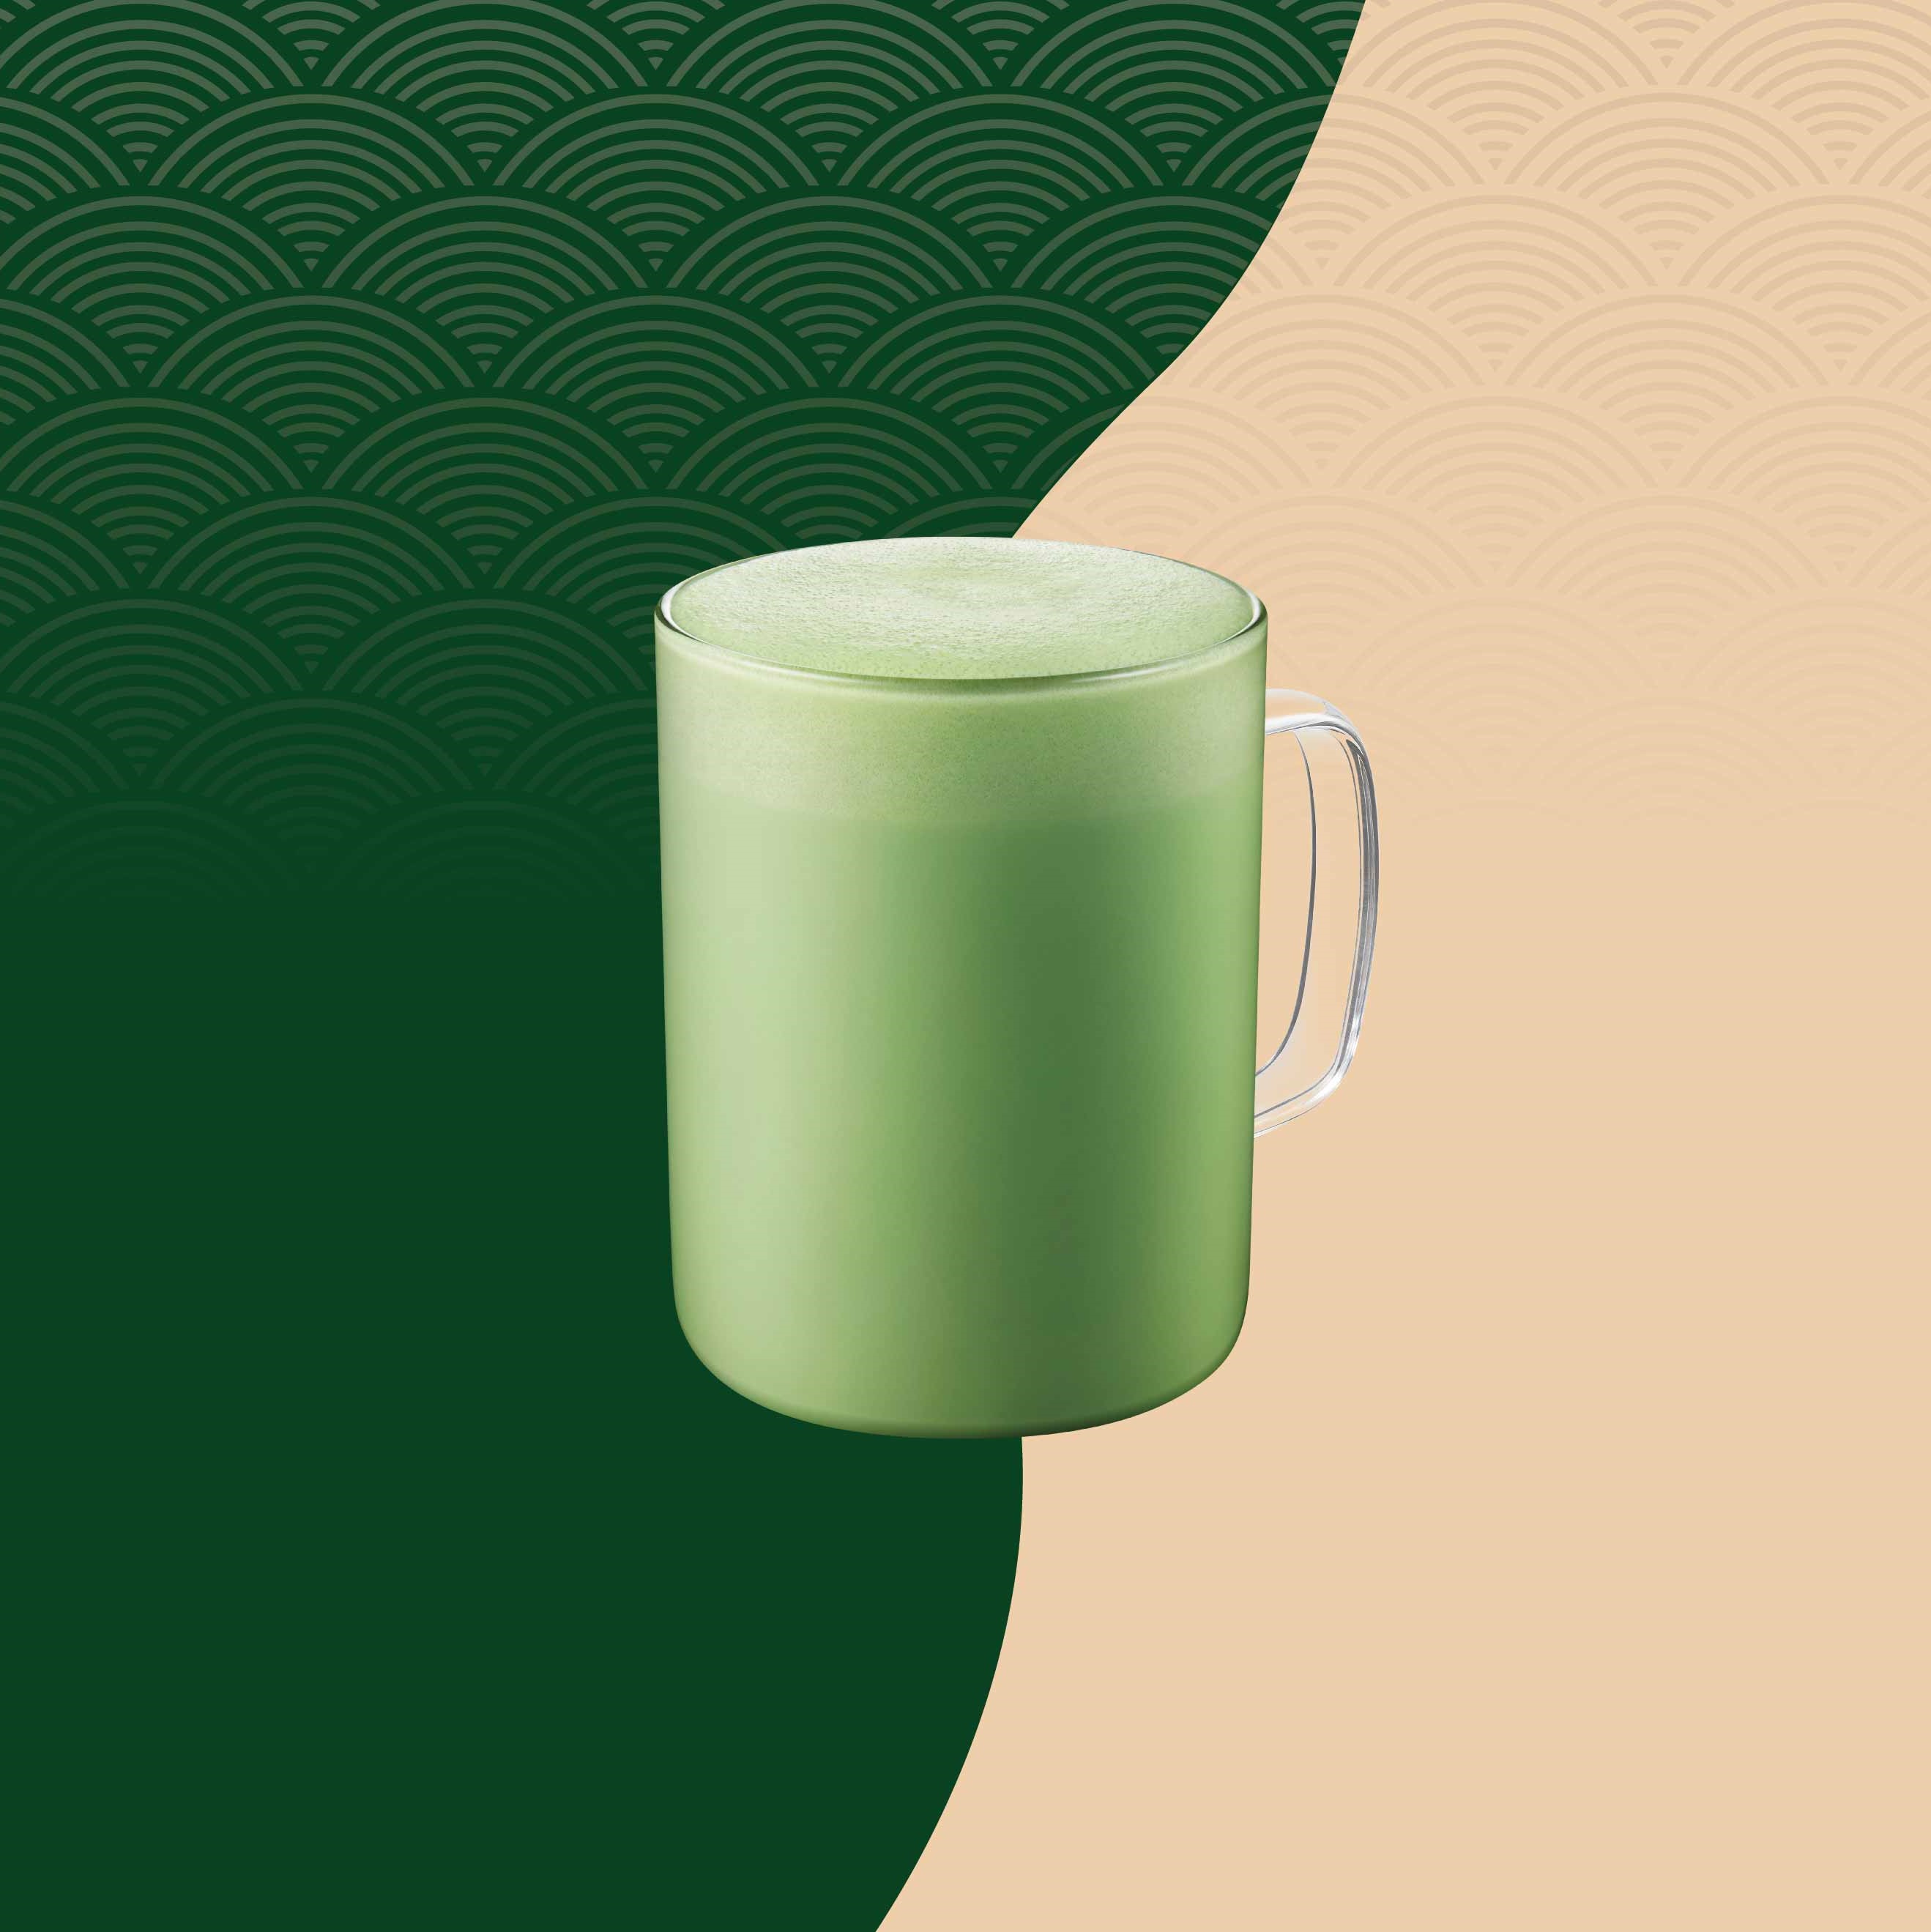 Starbucks_Pure Matcha Latte.jpg